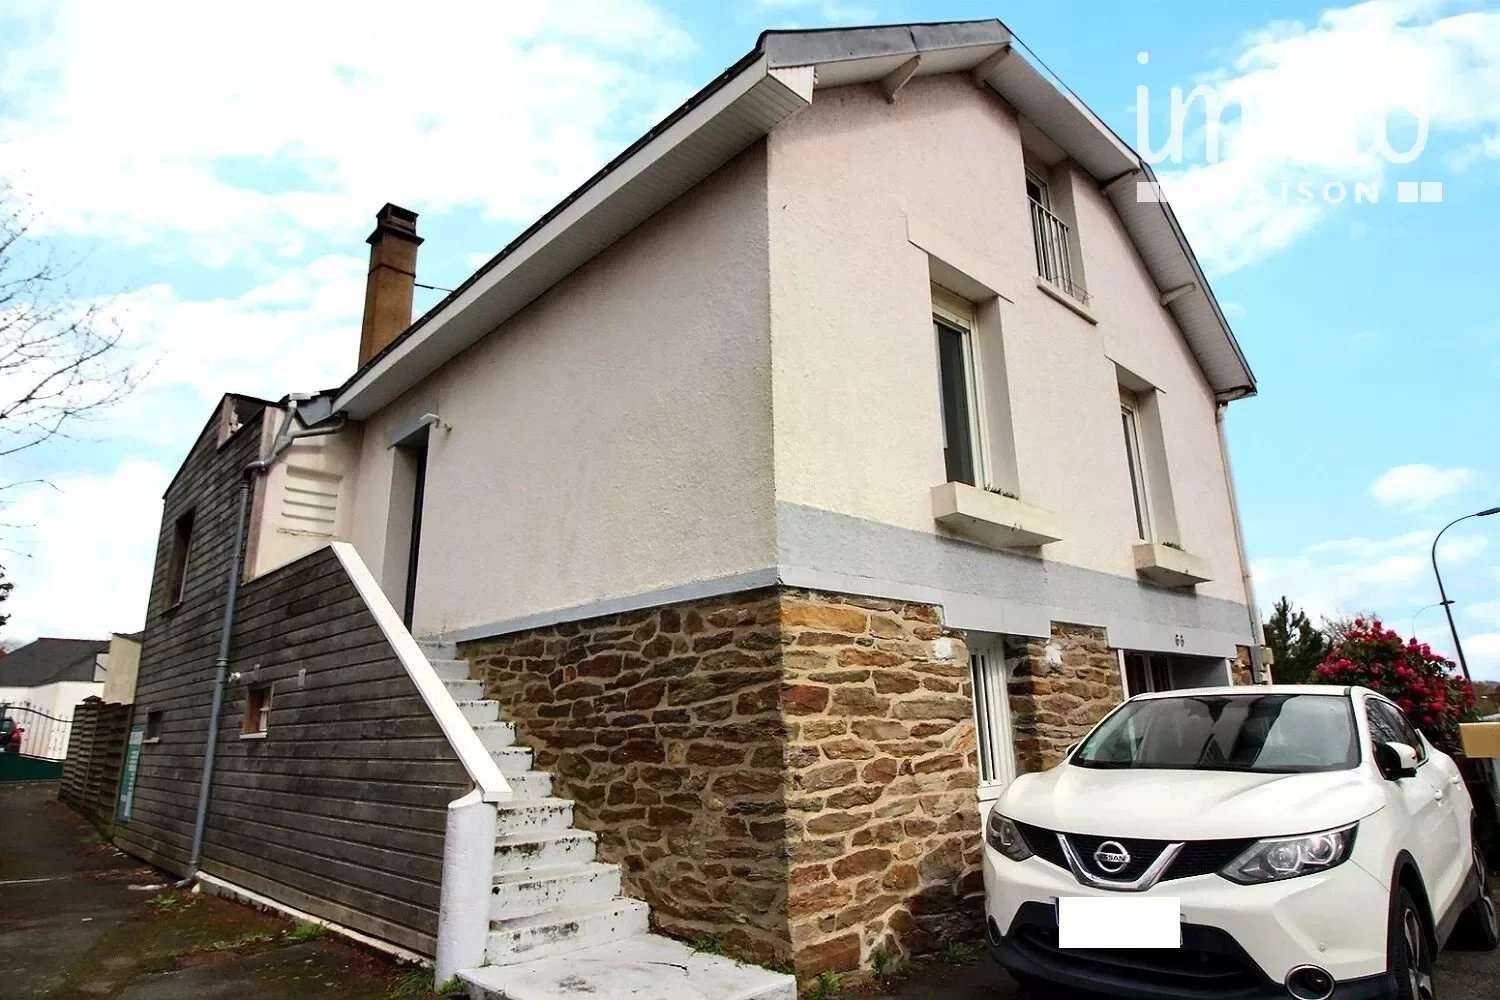  à vendre maison Orvault Loire-Atlantique 1